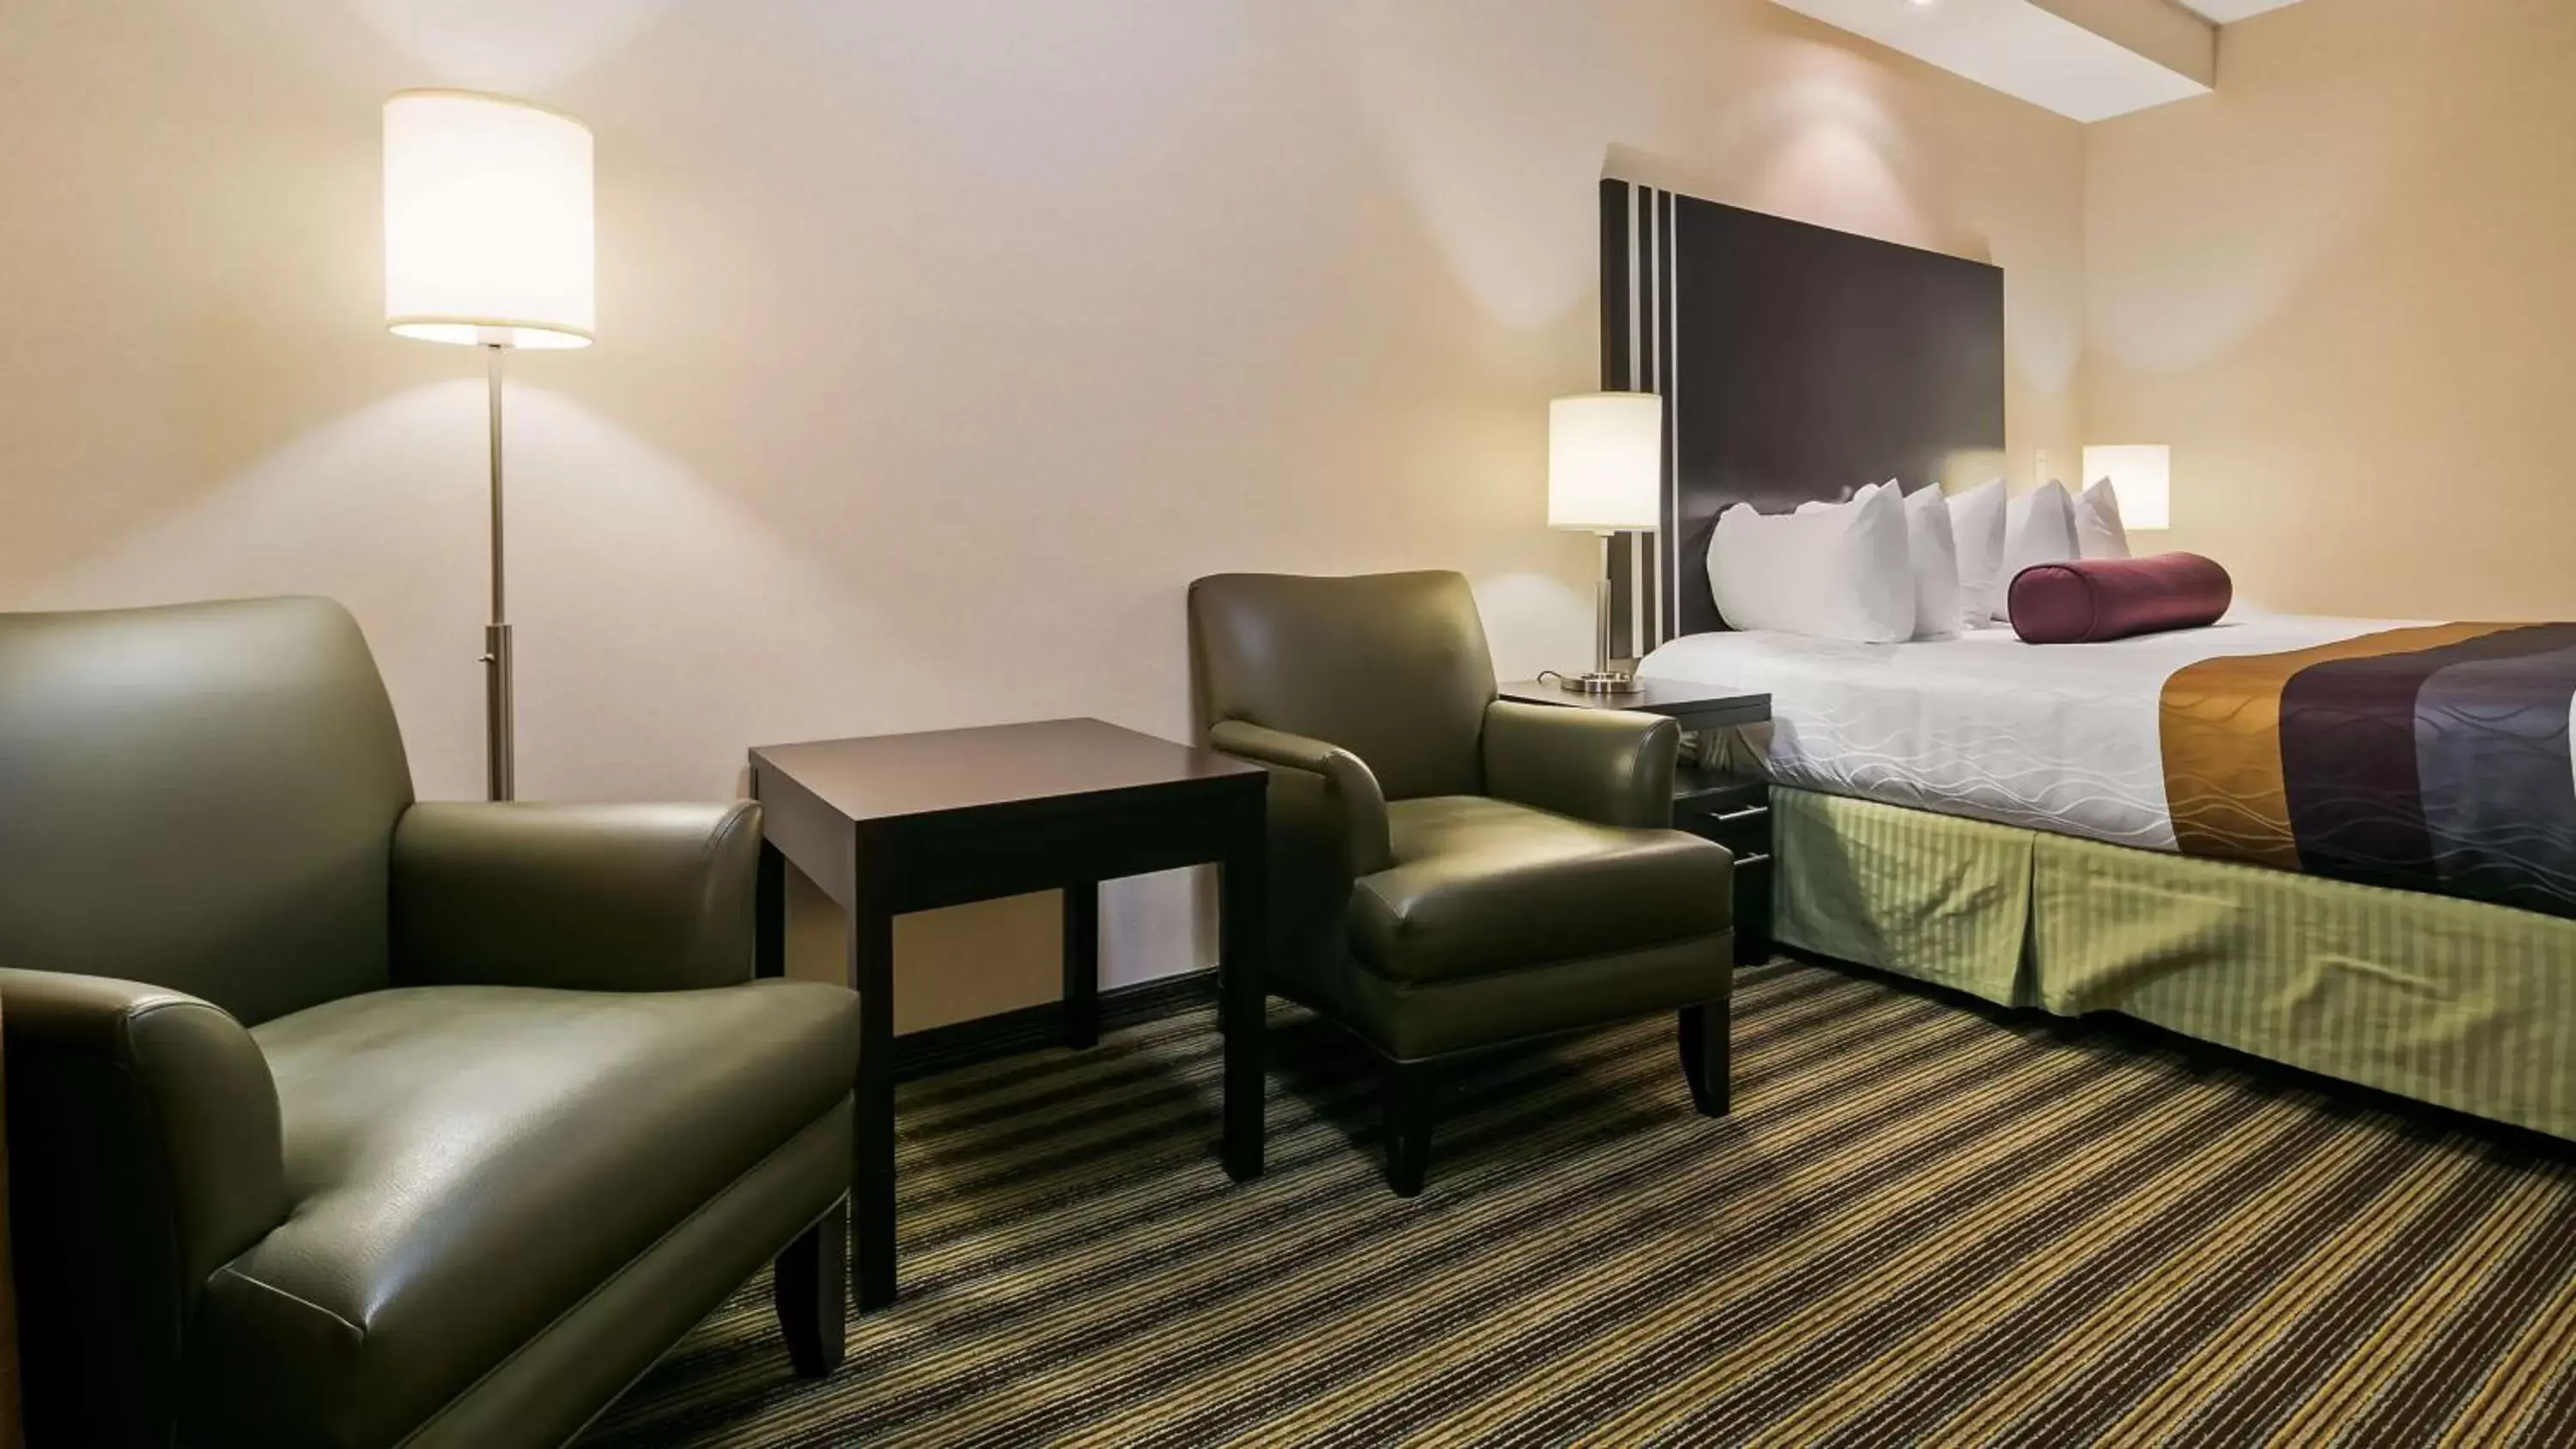 Bedroom, Seating Area in Best Western Plus Sherwood Park Inn & Suites